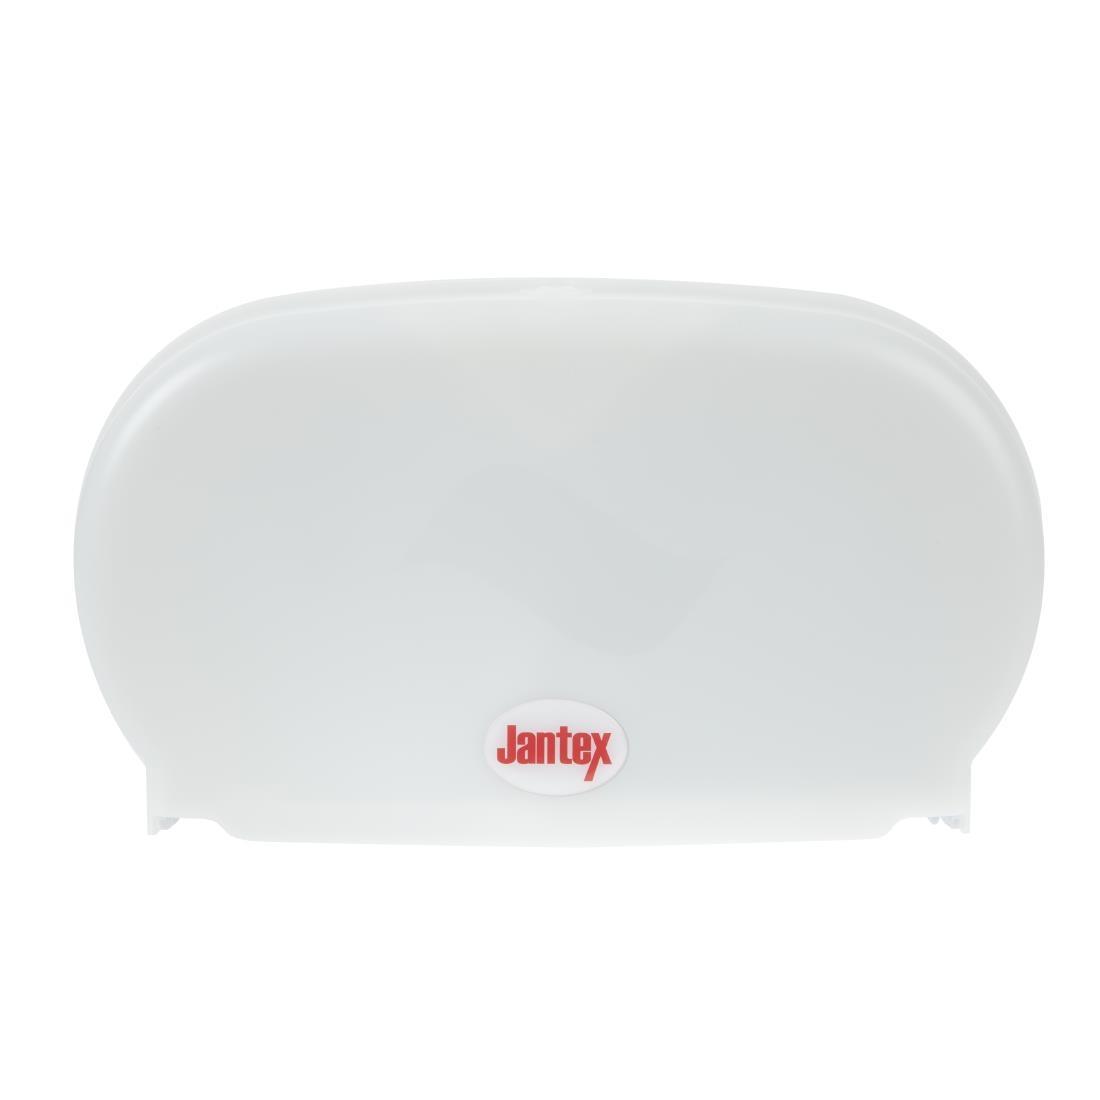 Jantex Micro Twin Toilet Roll Dispenser - GL062  - 5